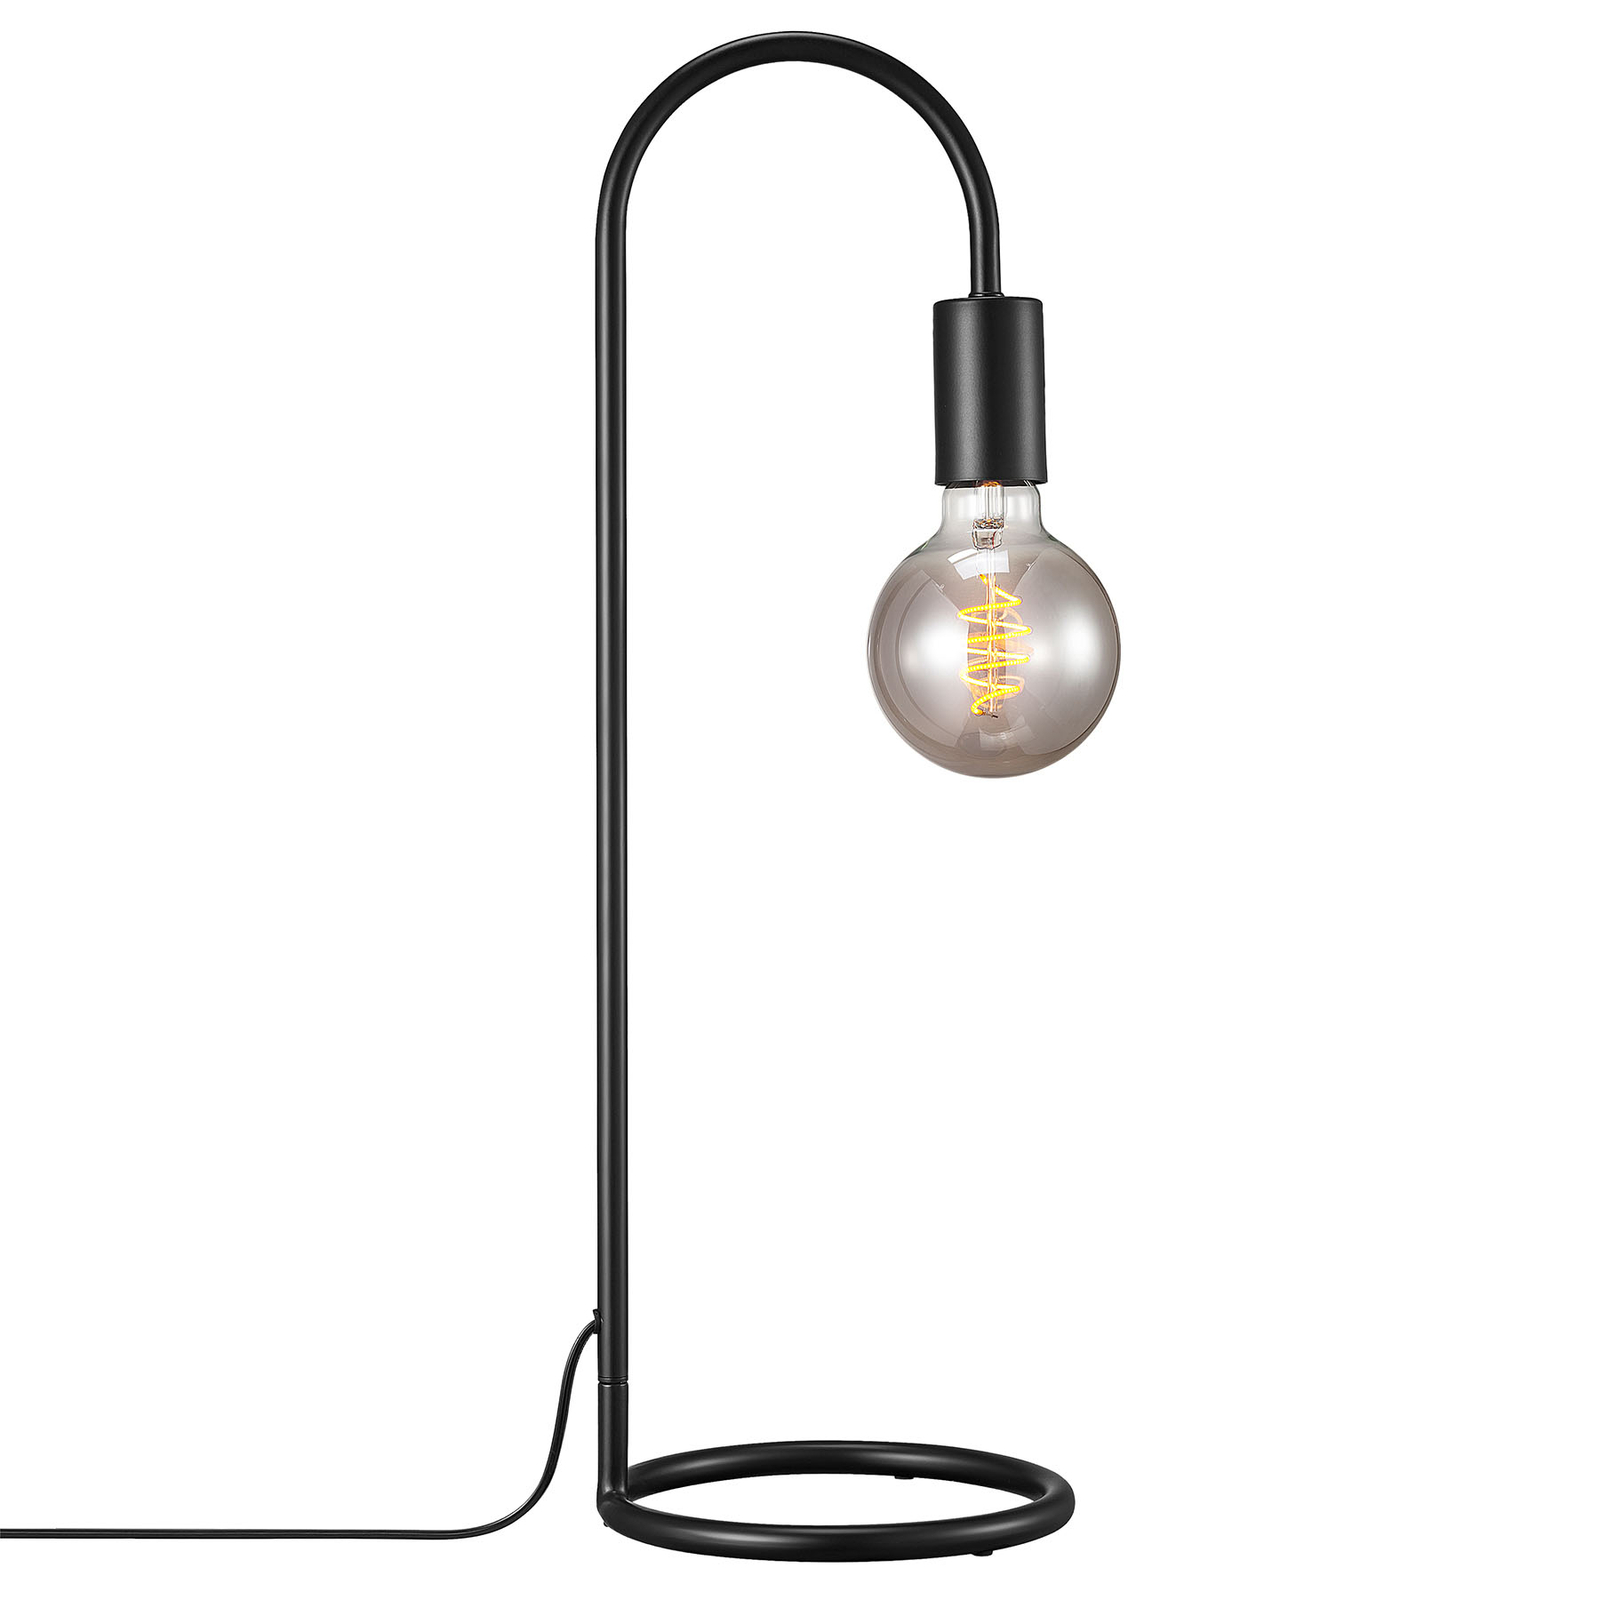 Paco asztali lámpa minimalista stílusban